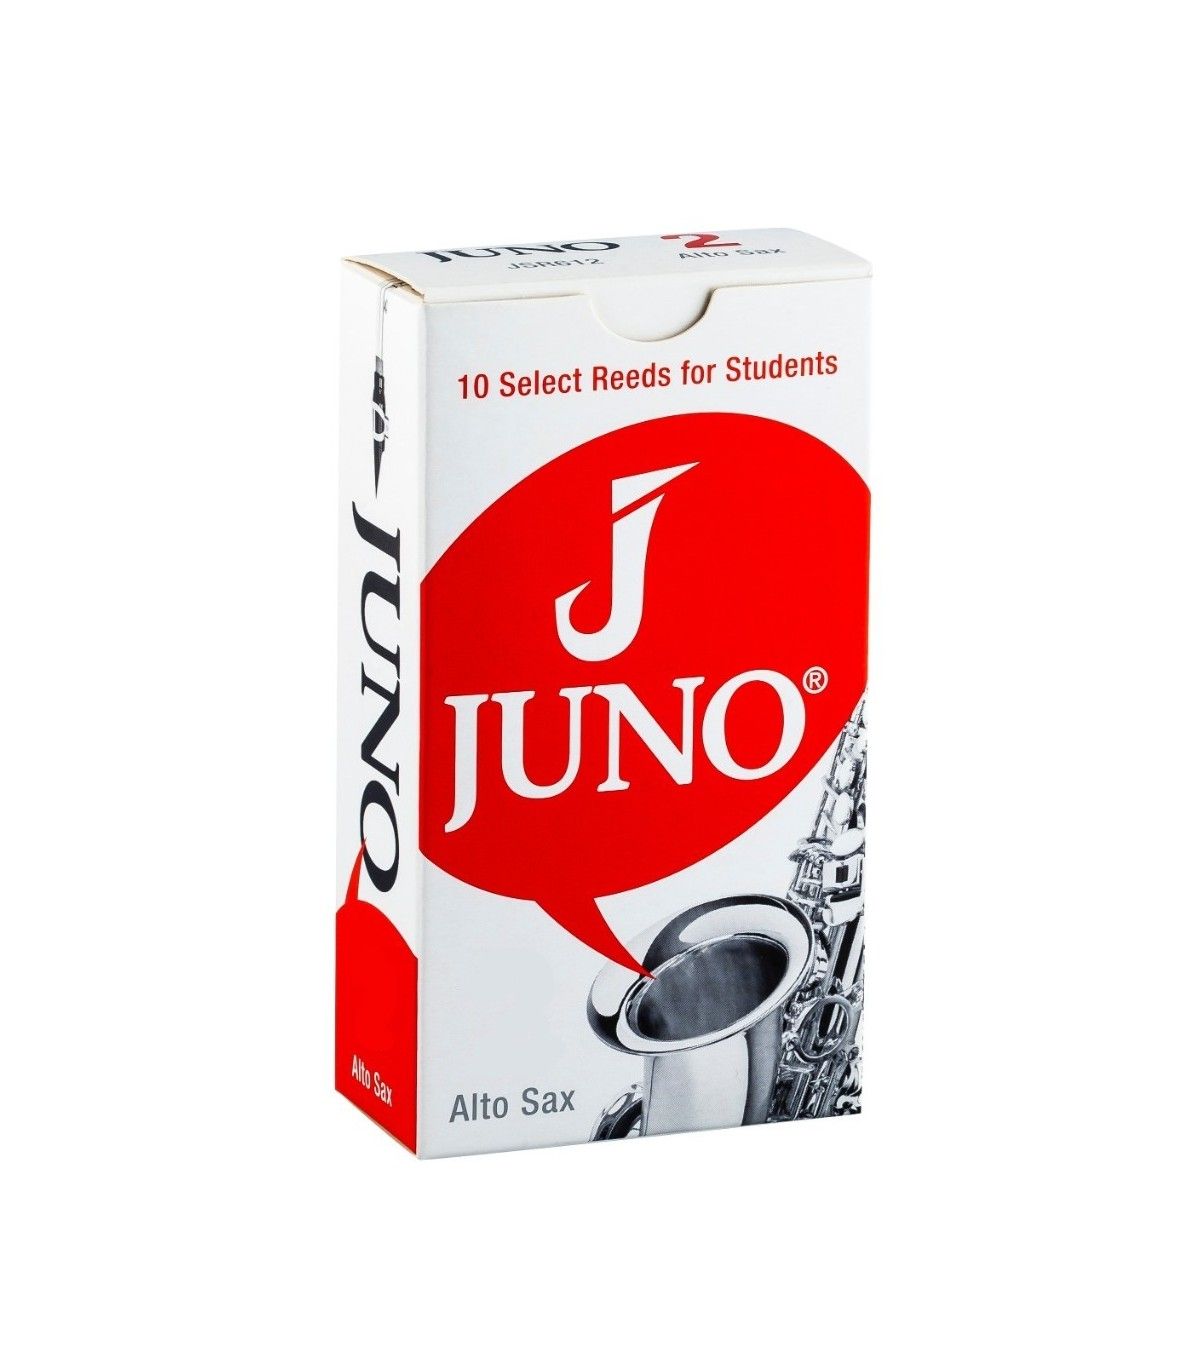 Vandoren Juno 3.5 JSR6135